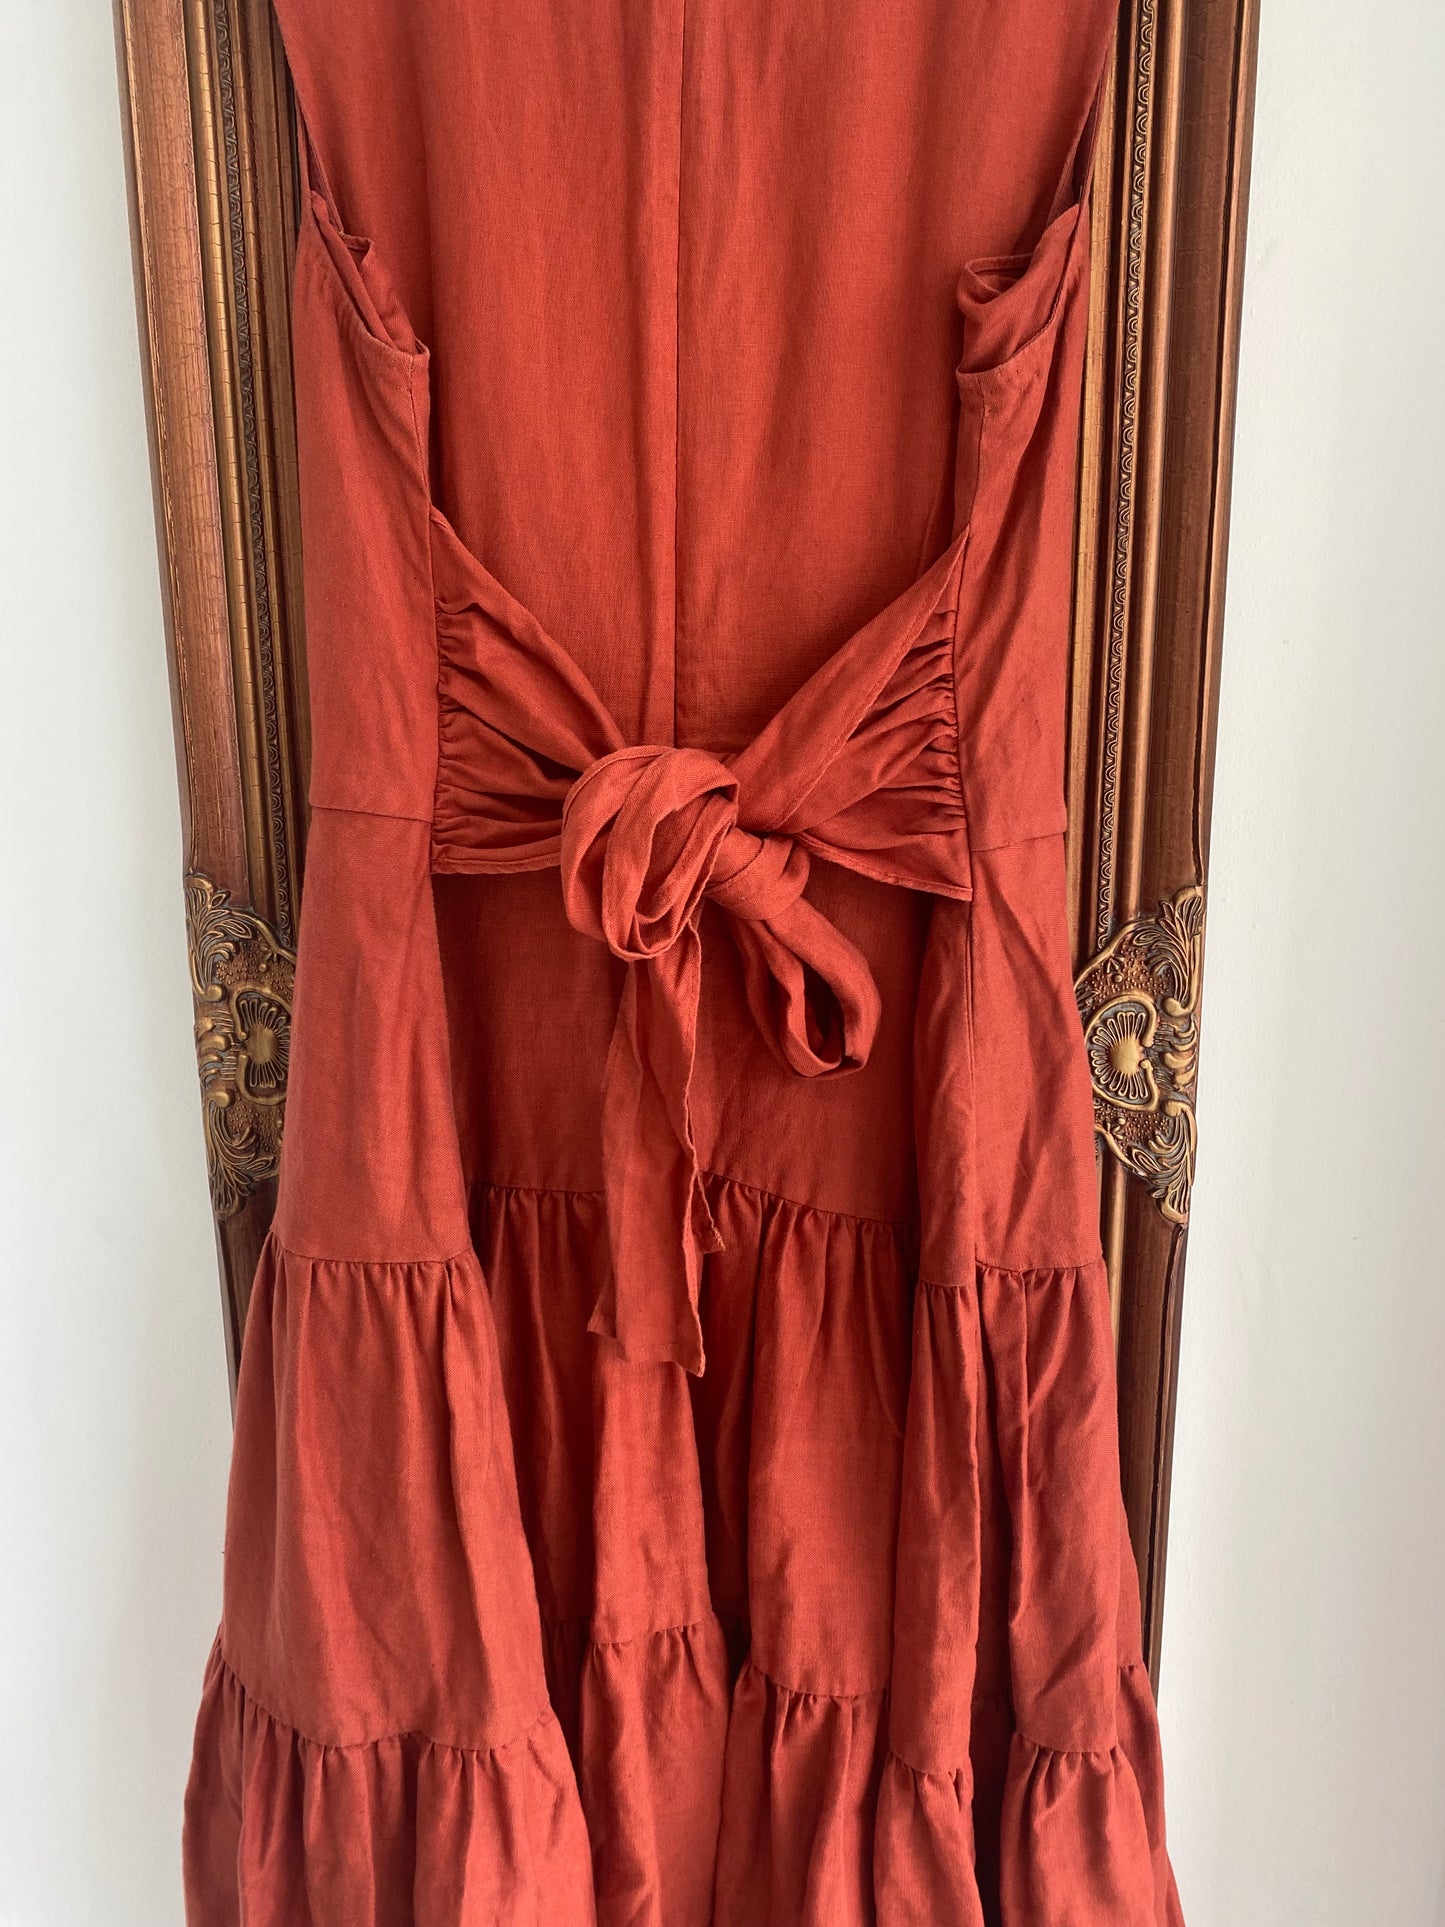 Hobbs Burnt Orange Linen Tiered Maxi Dress Size 16